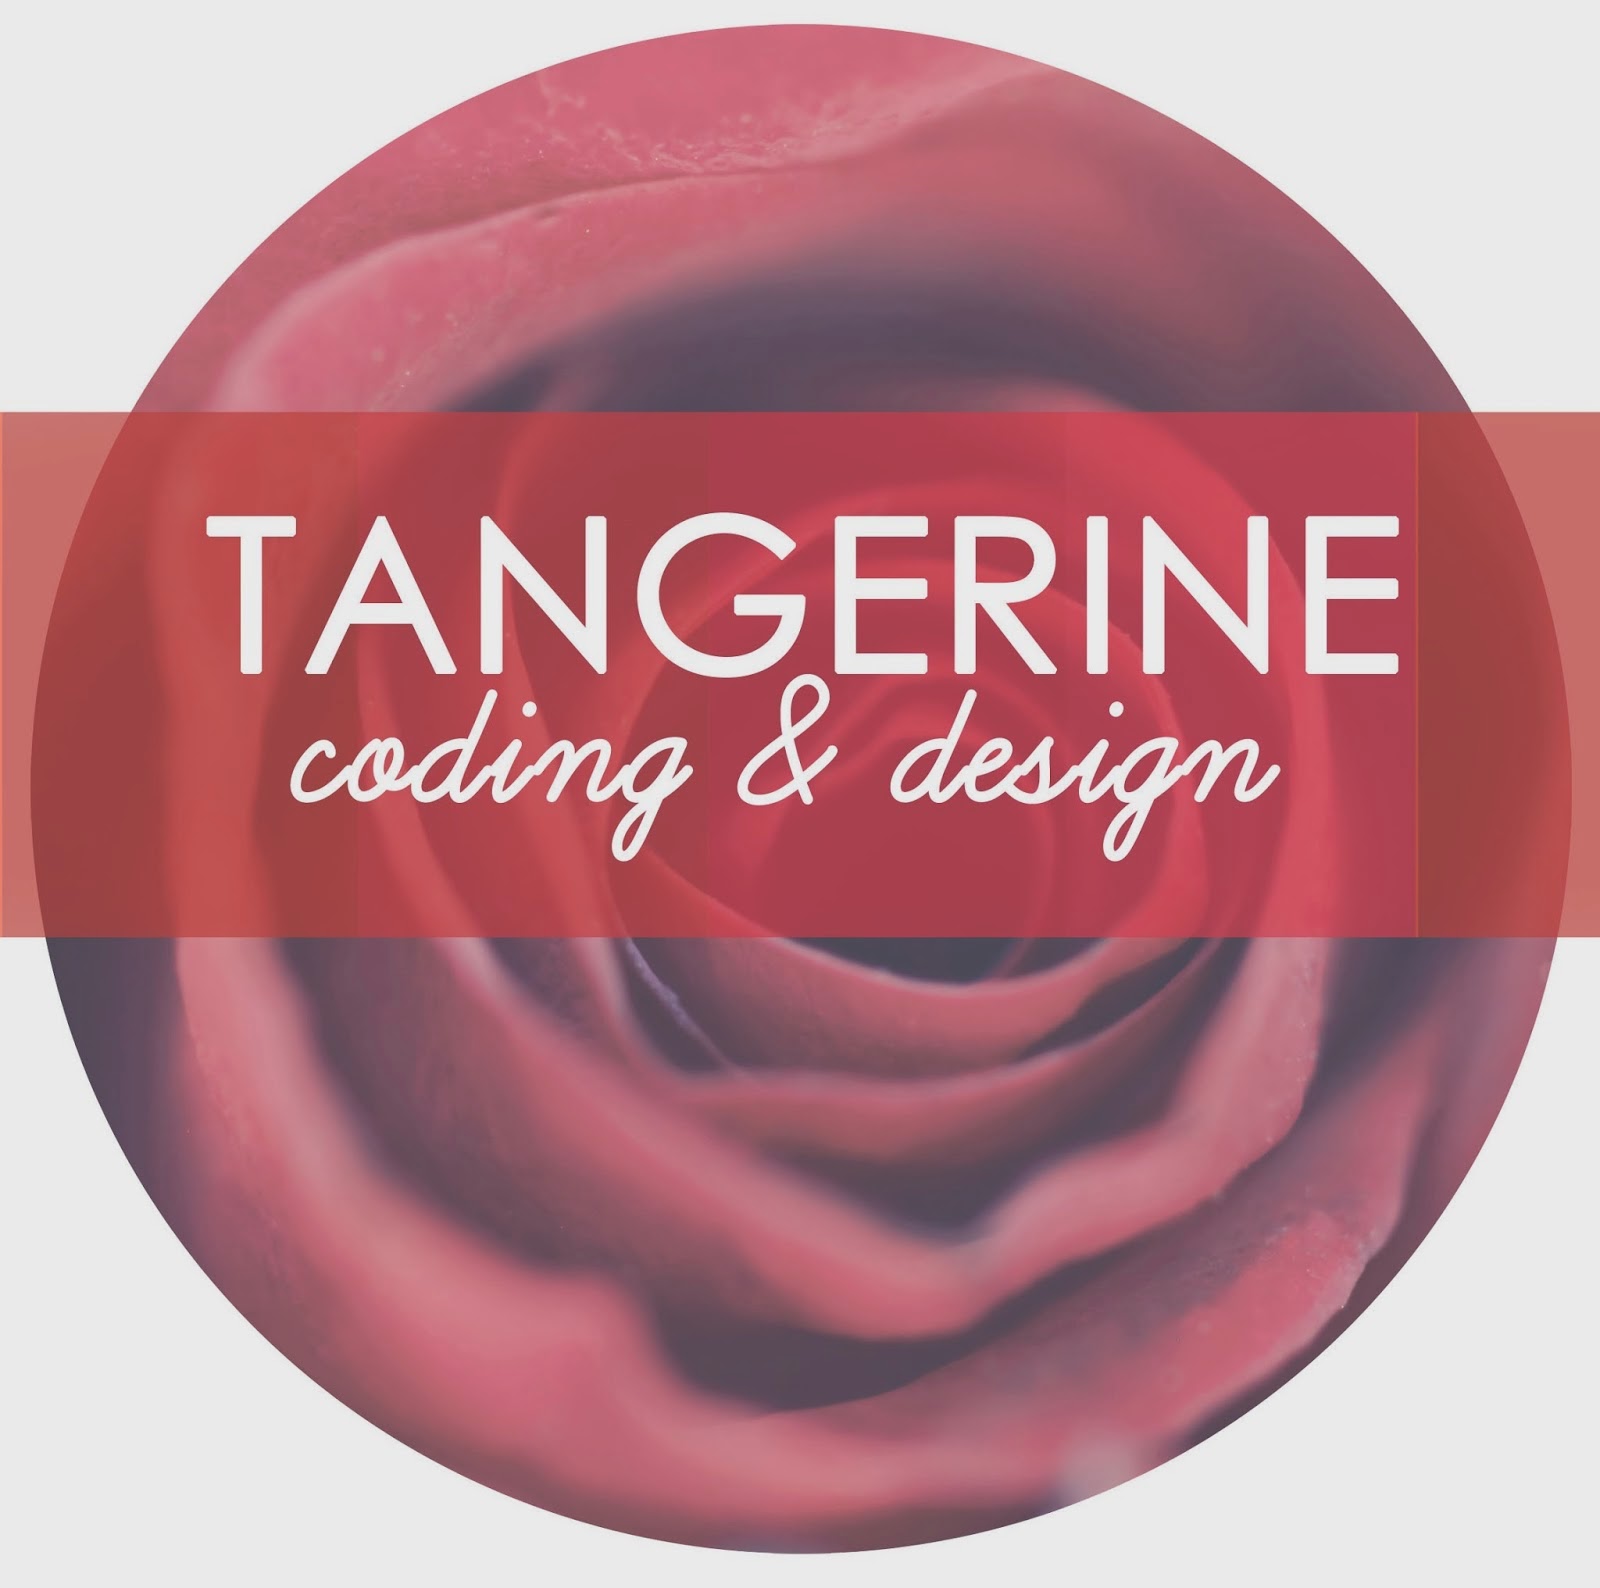 http://tangerinetane.blogspot.com/p/tangerine-coding-design.html